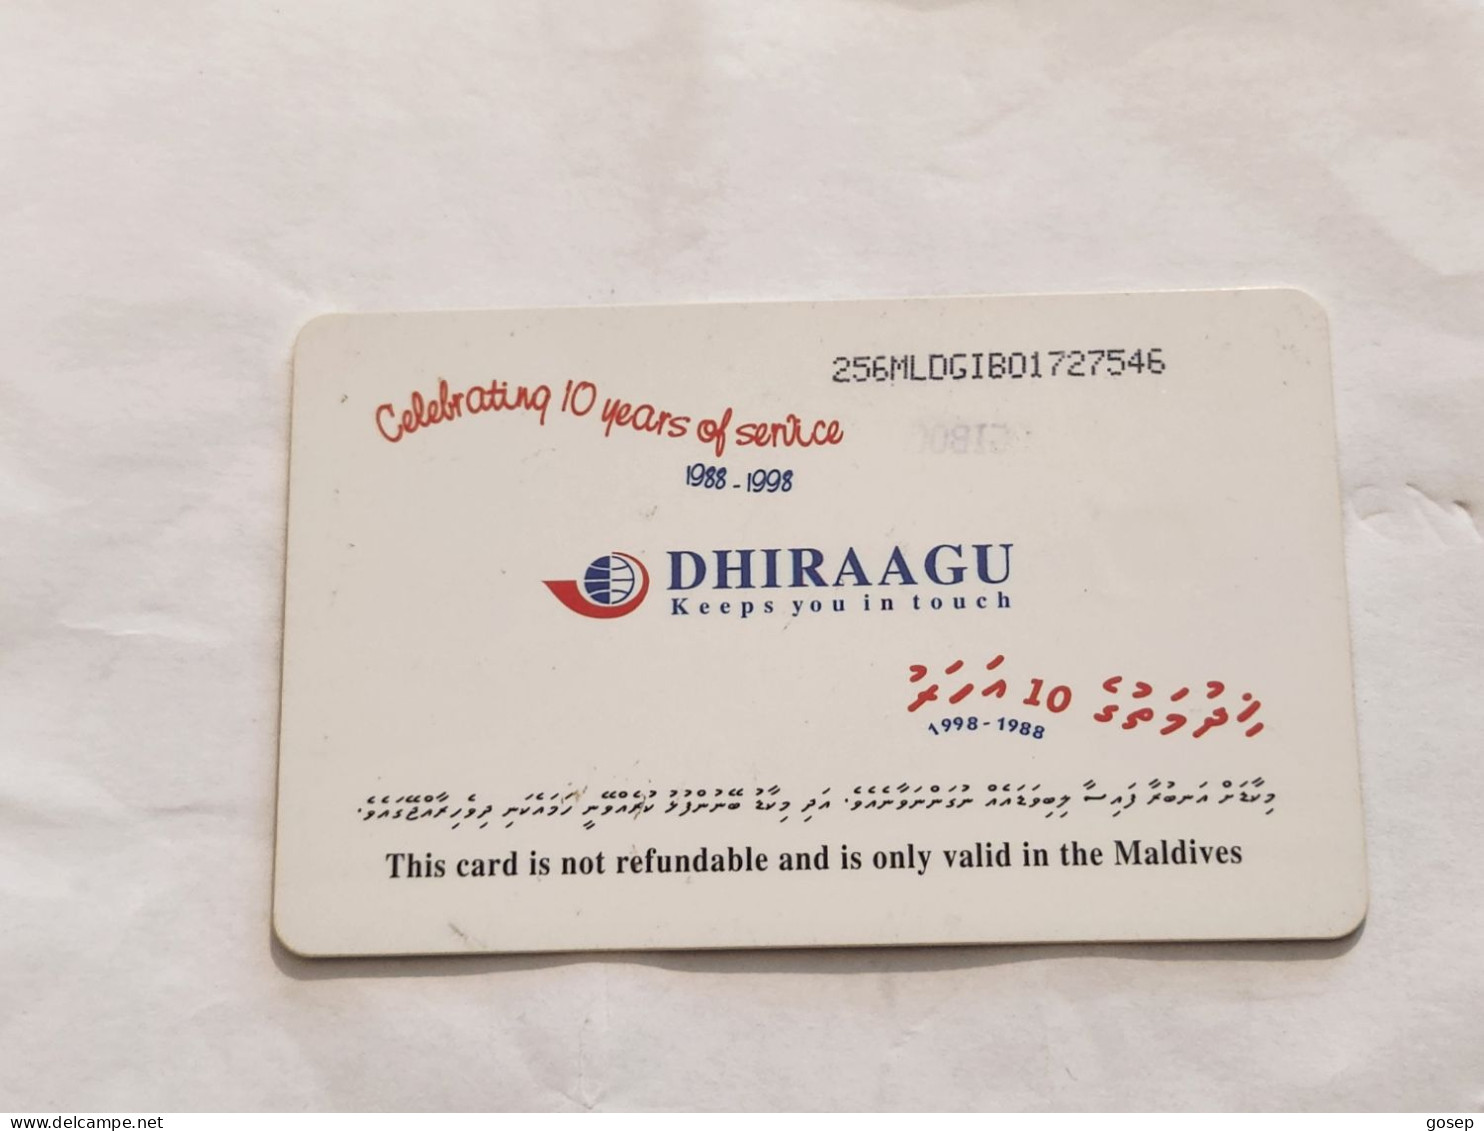 Maldives-(256MLDGIB-MAL-C-01)-save The Turtle-(44)-(RF30)-(256MLDGIB01727546)-used Card+1card Prepiad Free - Maldives